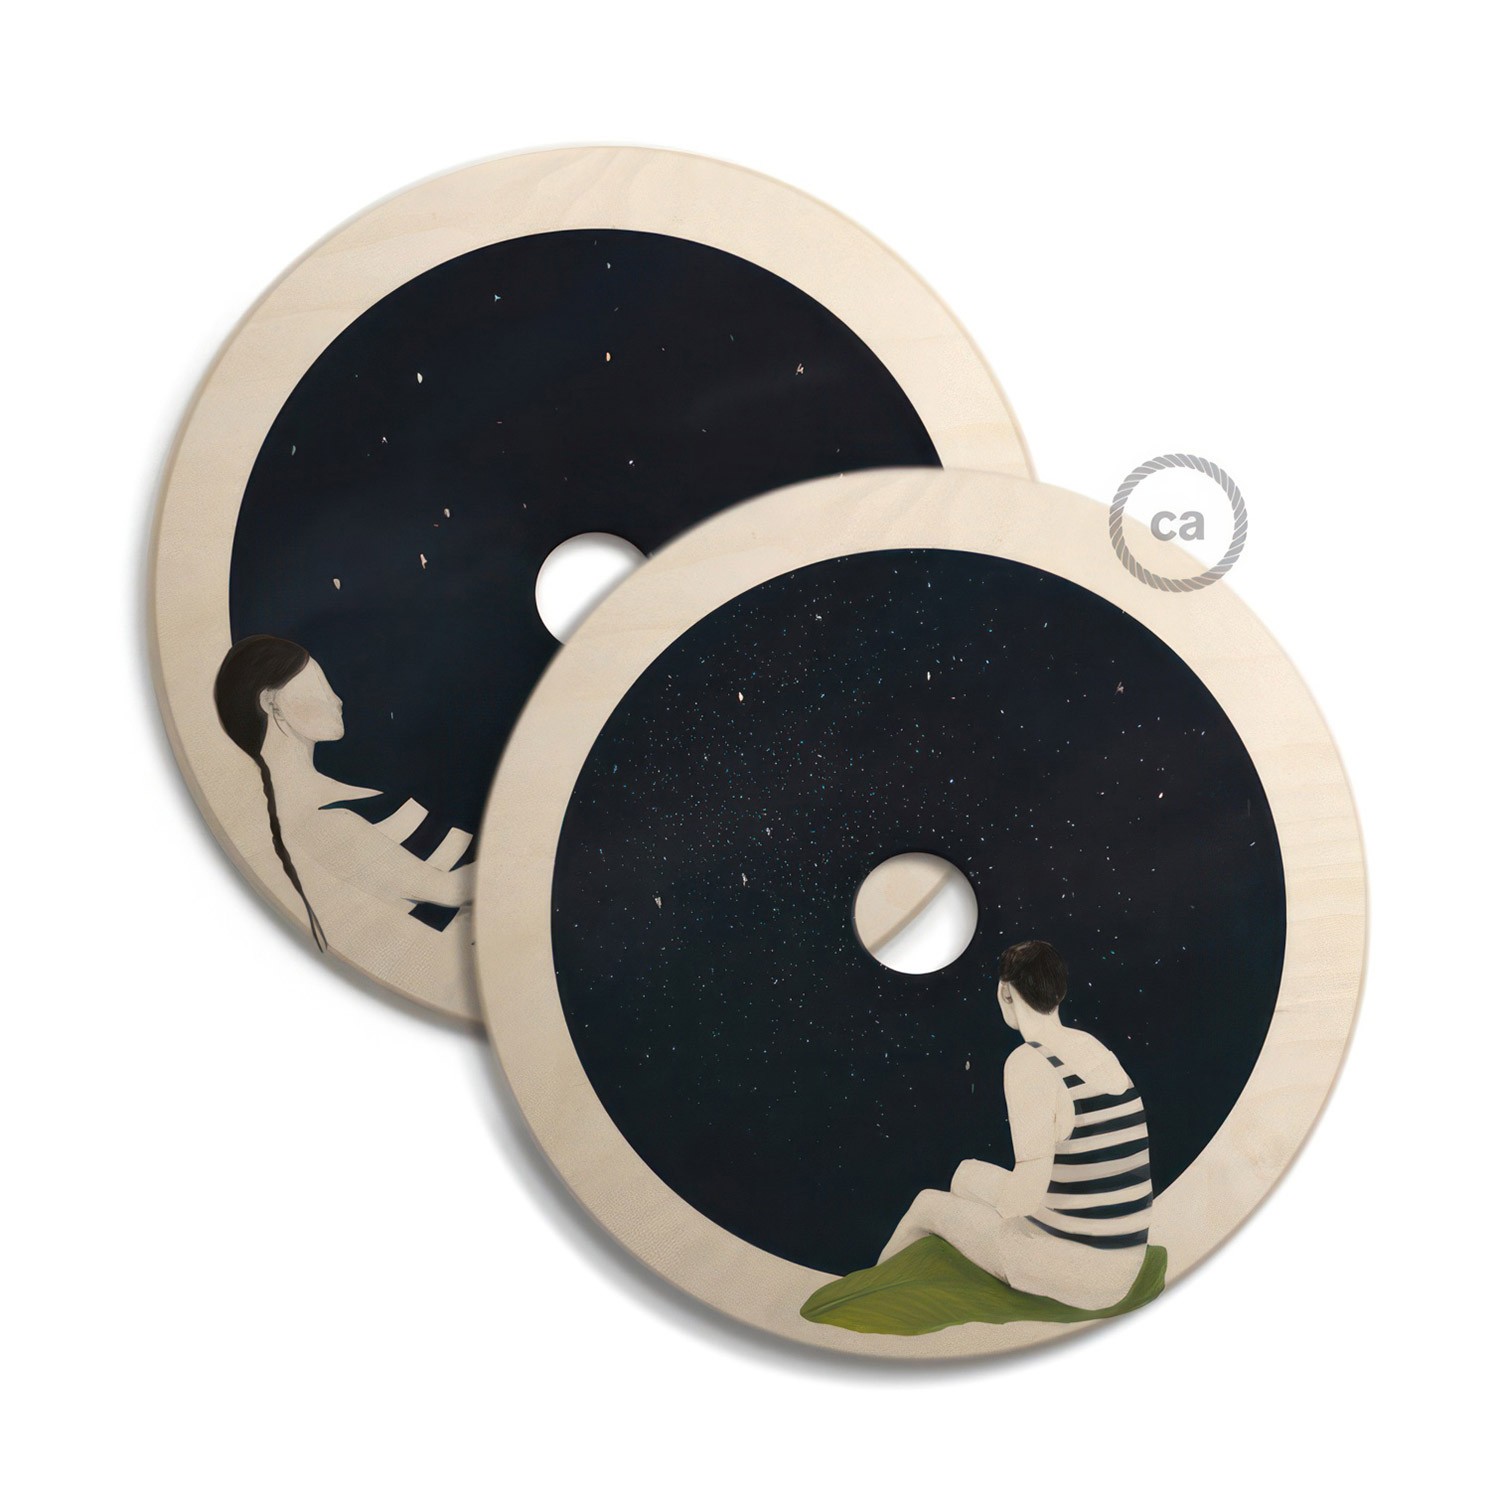 Sjenilo - UFO drveni disk s ilustracijama raznih umjetnika, promjer 33 cm, obostrano ilustriran